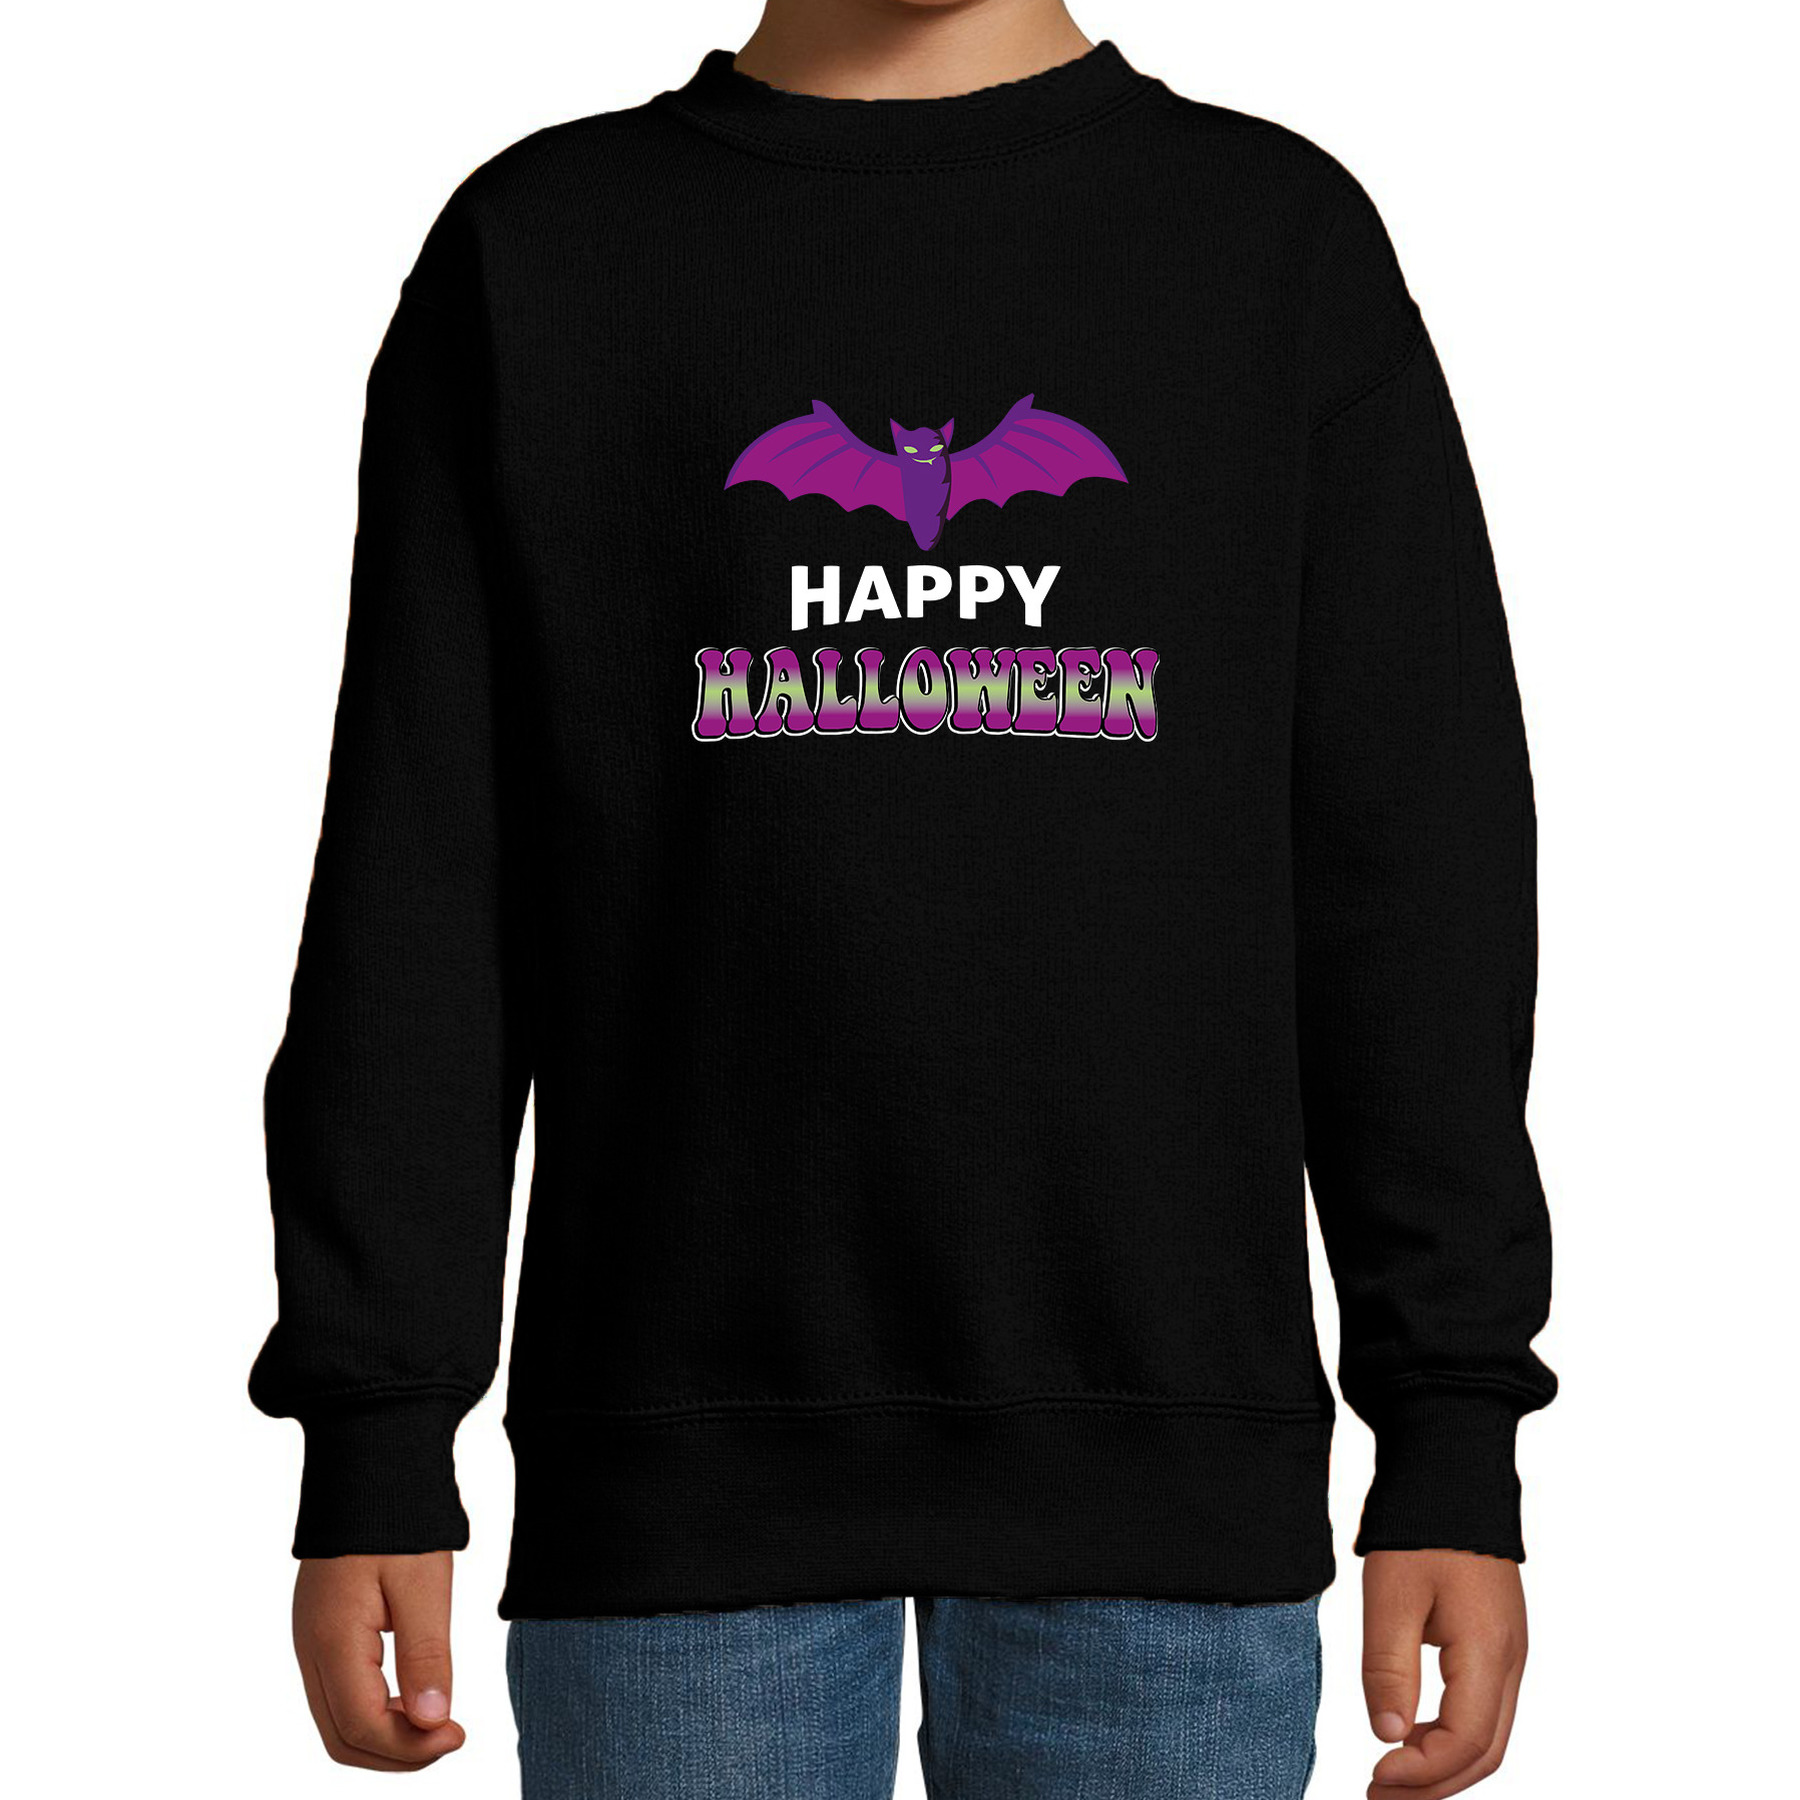 Halloween - Vleermuis / happy halloween verkleed sweater zwart voor kinderen